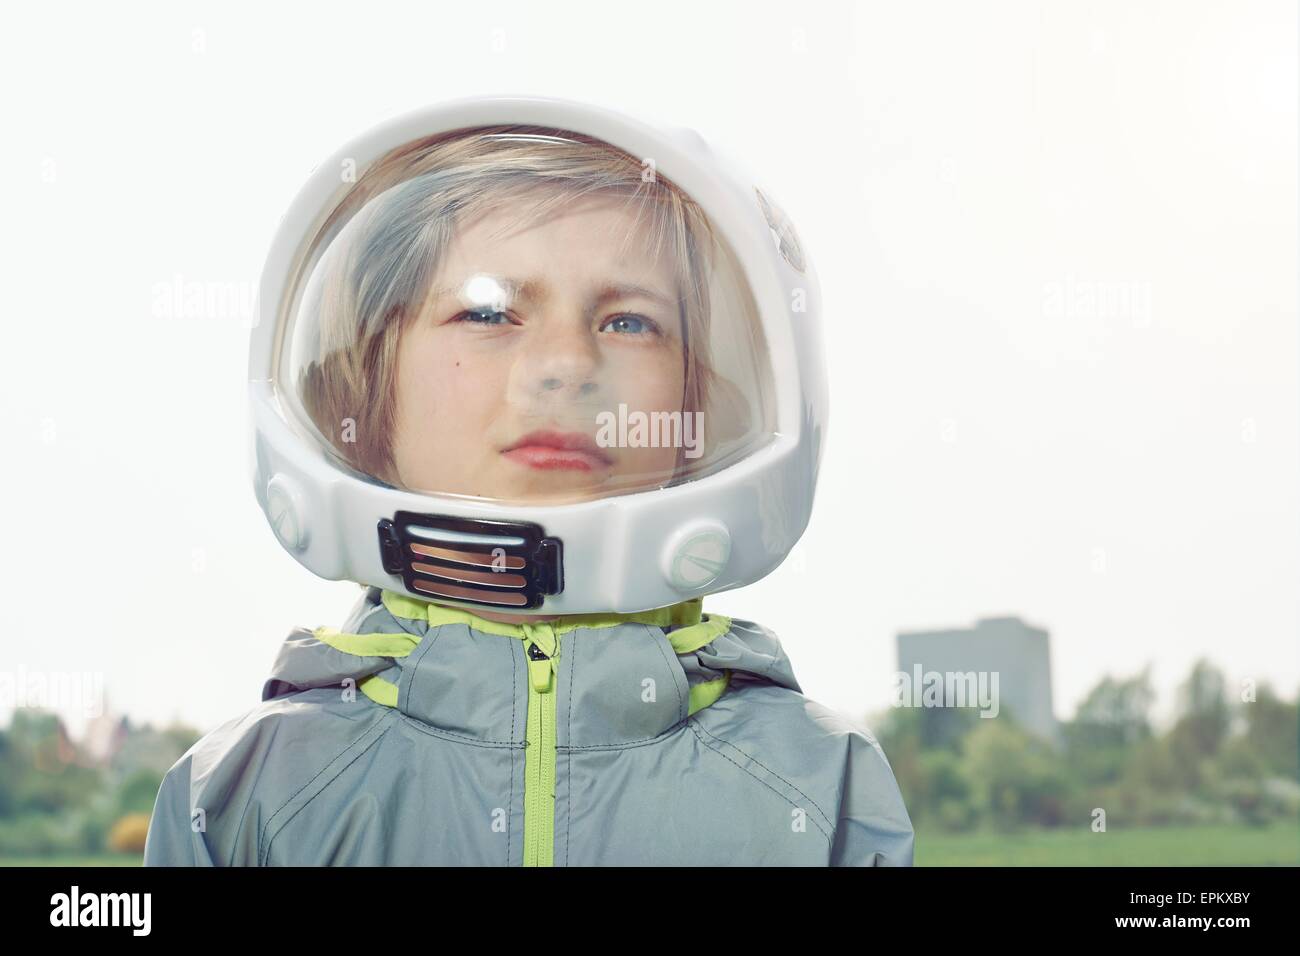 Junge verkleidet als Raumfahrer Stockfoto